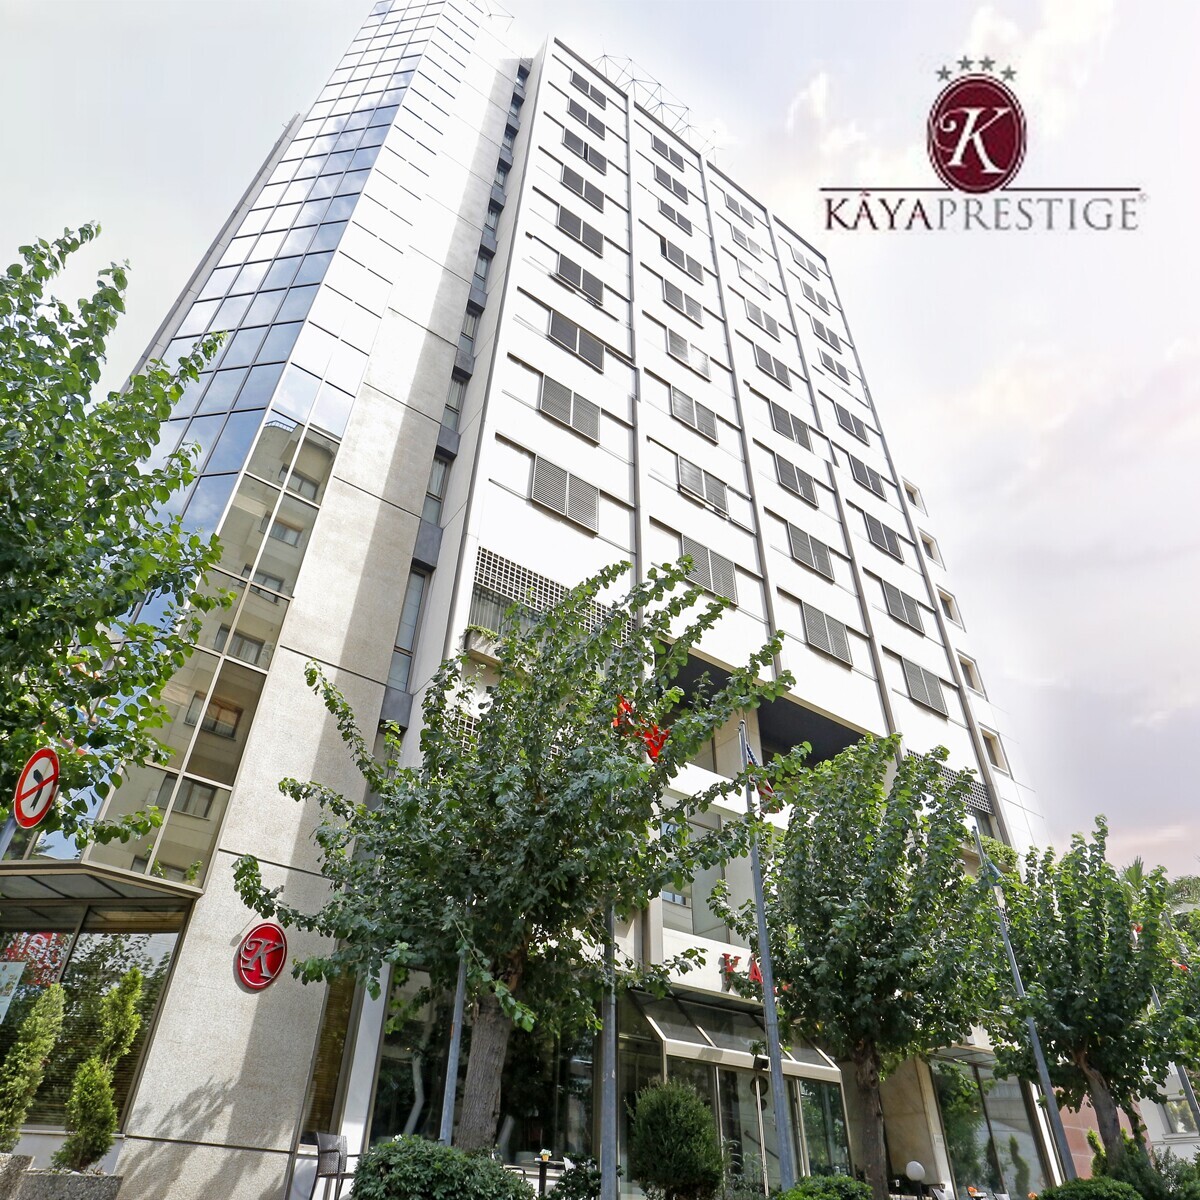 Kaya Prestige Hotel İzmir'in Modern Ambiyansında Tek veya Çift Kişilik Konaklama Seçenekleri